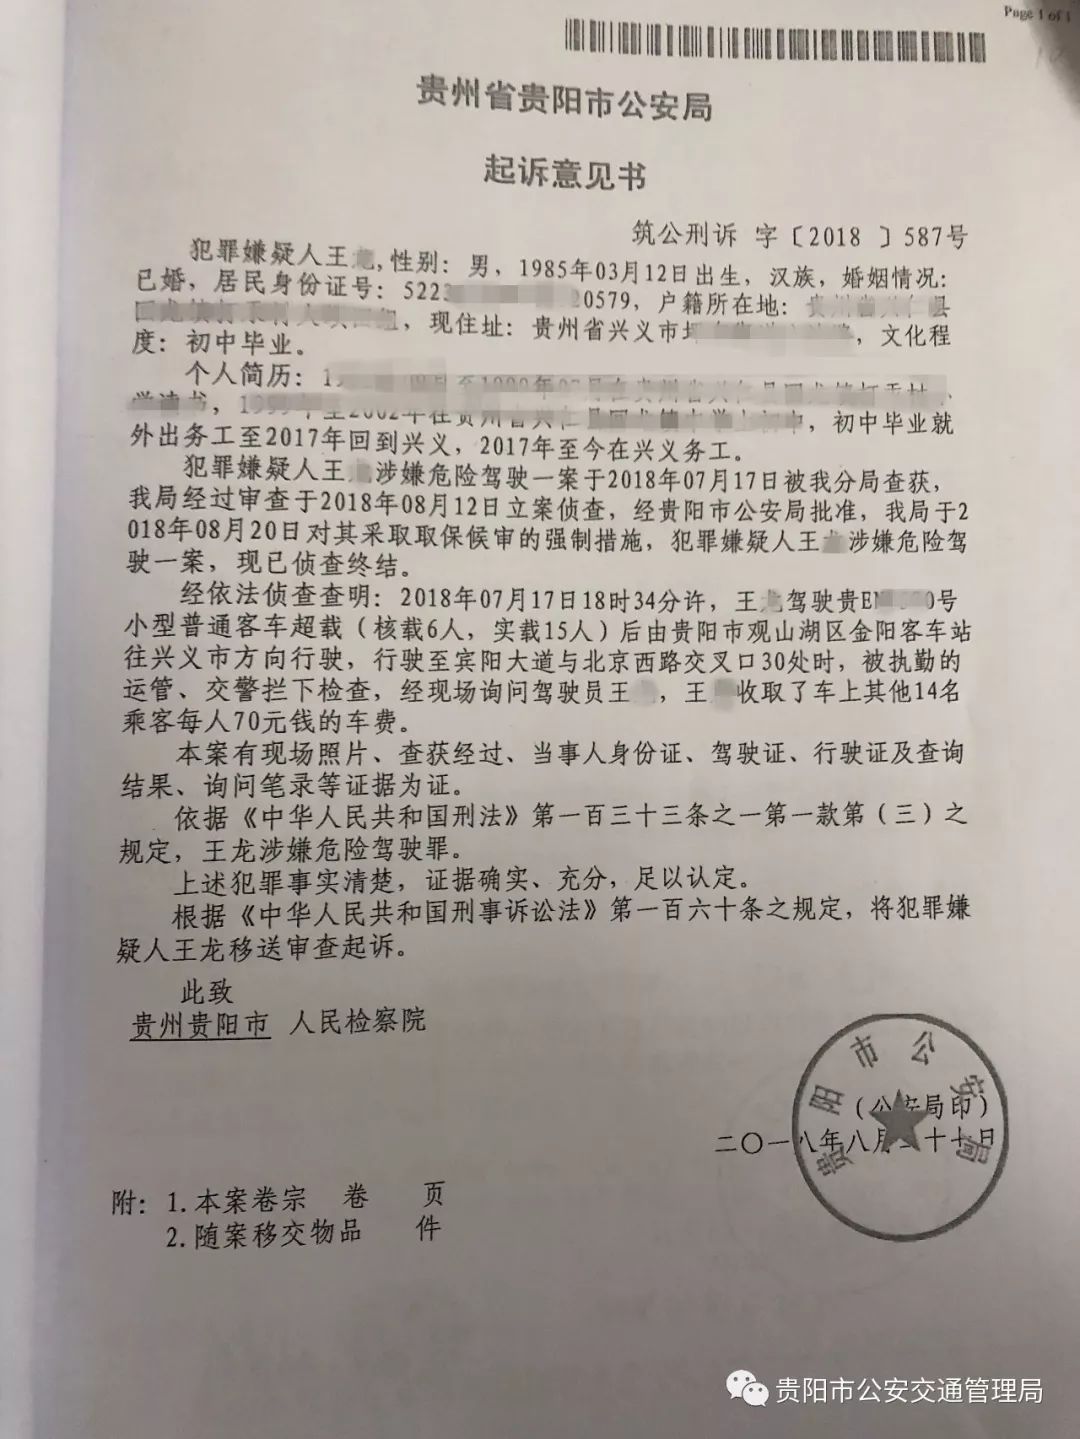 起诉意见书经过民警的后期侦查,并于8月29日将案件卷宗移送至贵阳市